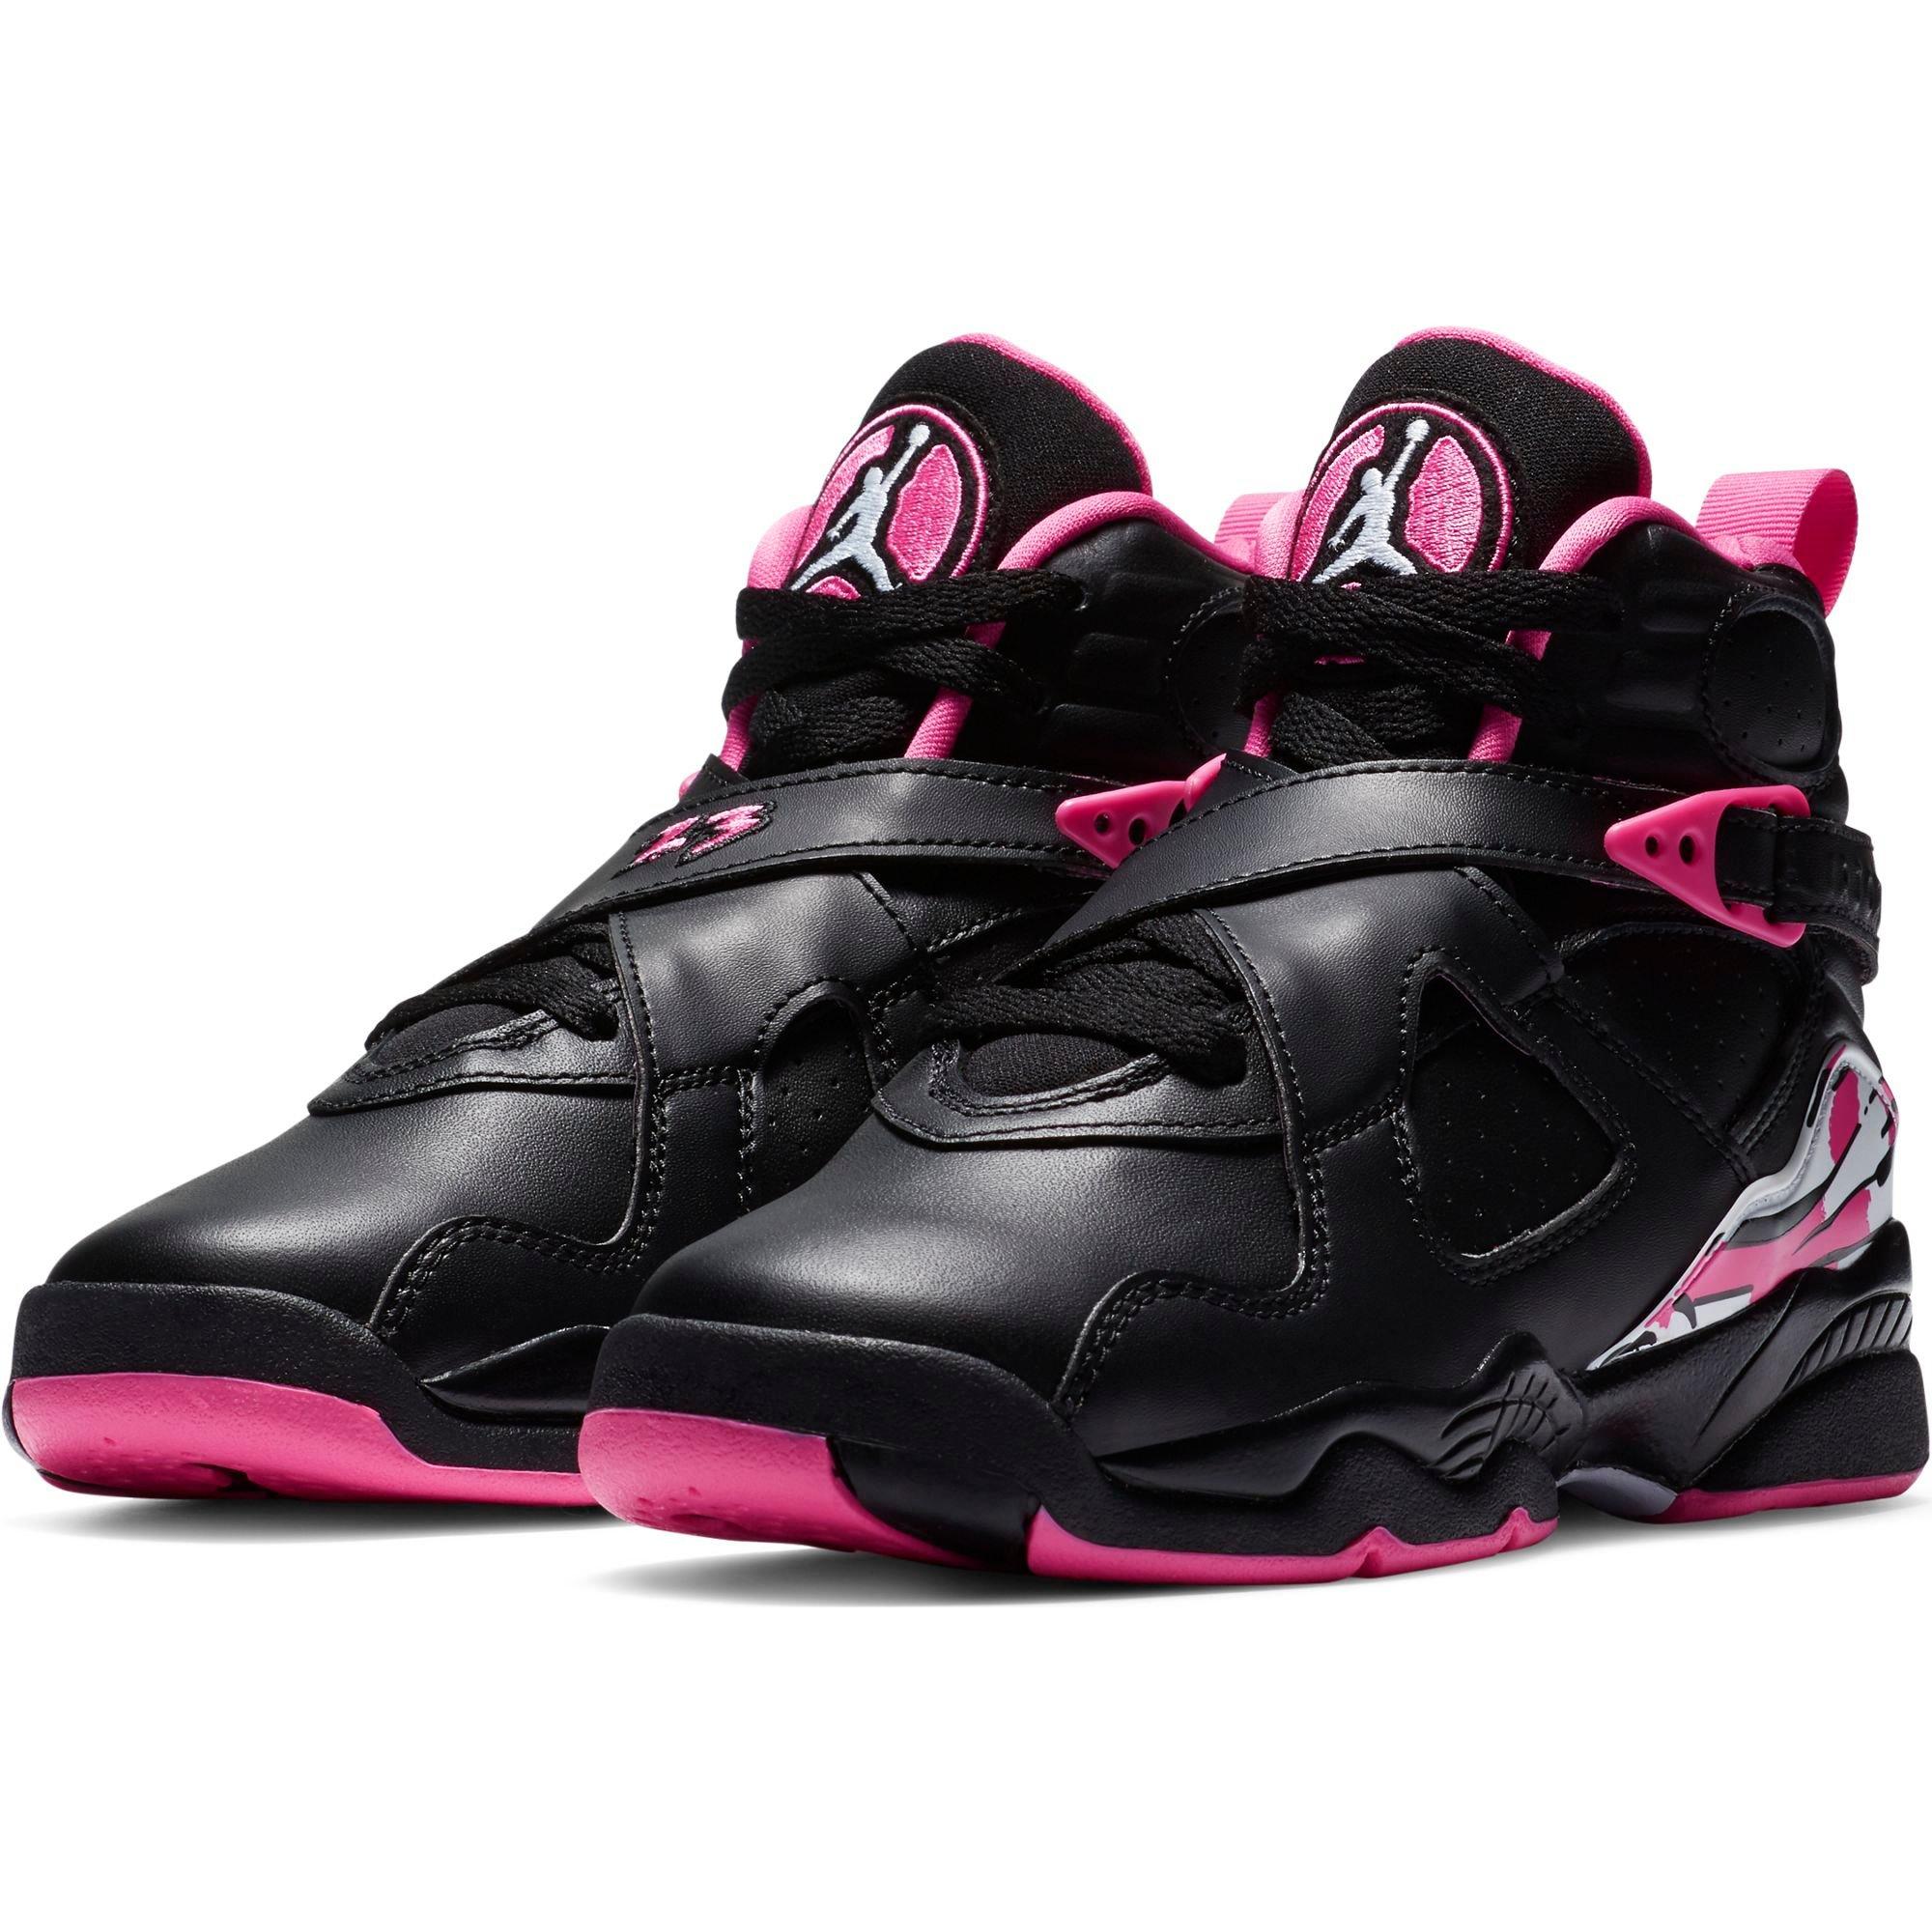 Sneakers Release- Air Jordan 8 Retro 